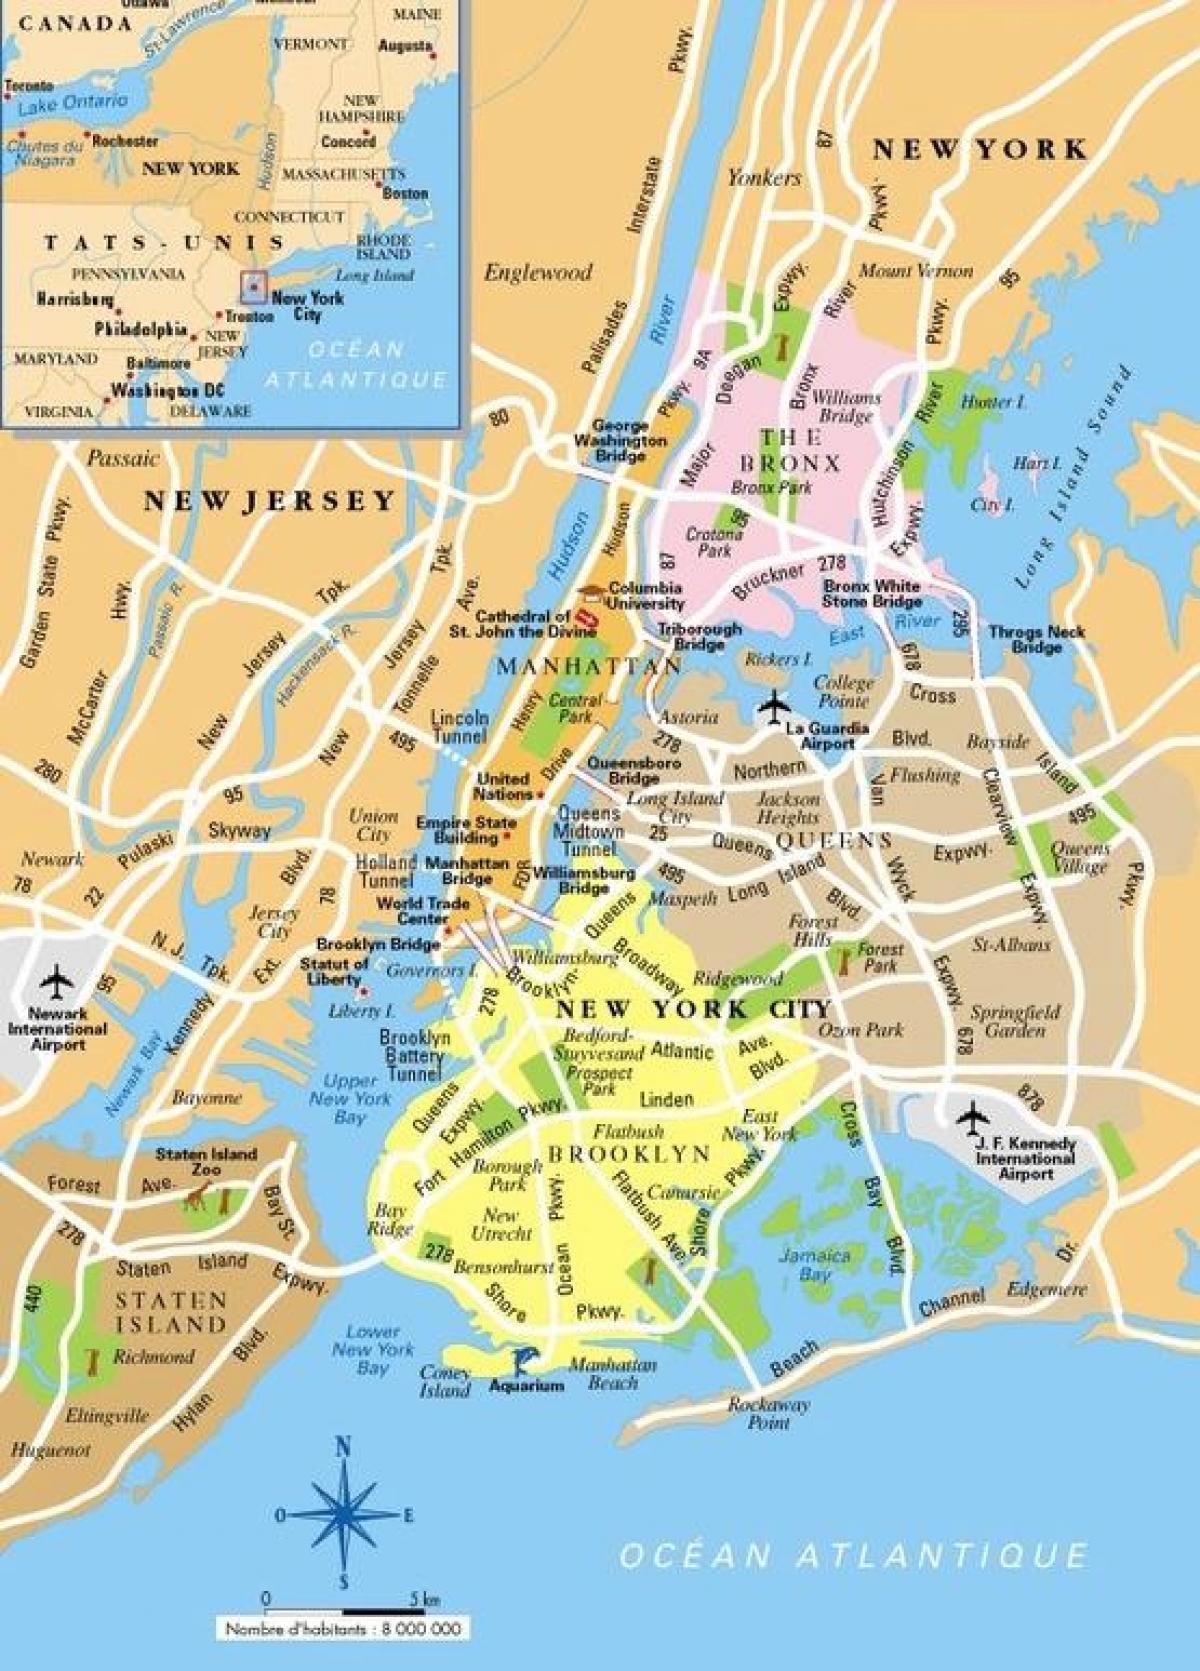 La Ciudad de nueva York Nueva York mapa